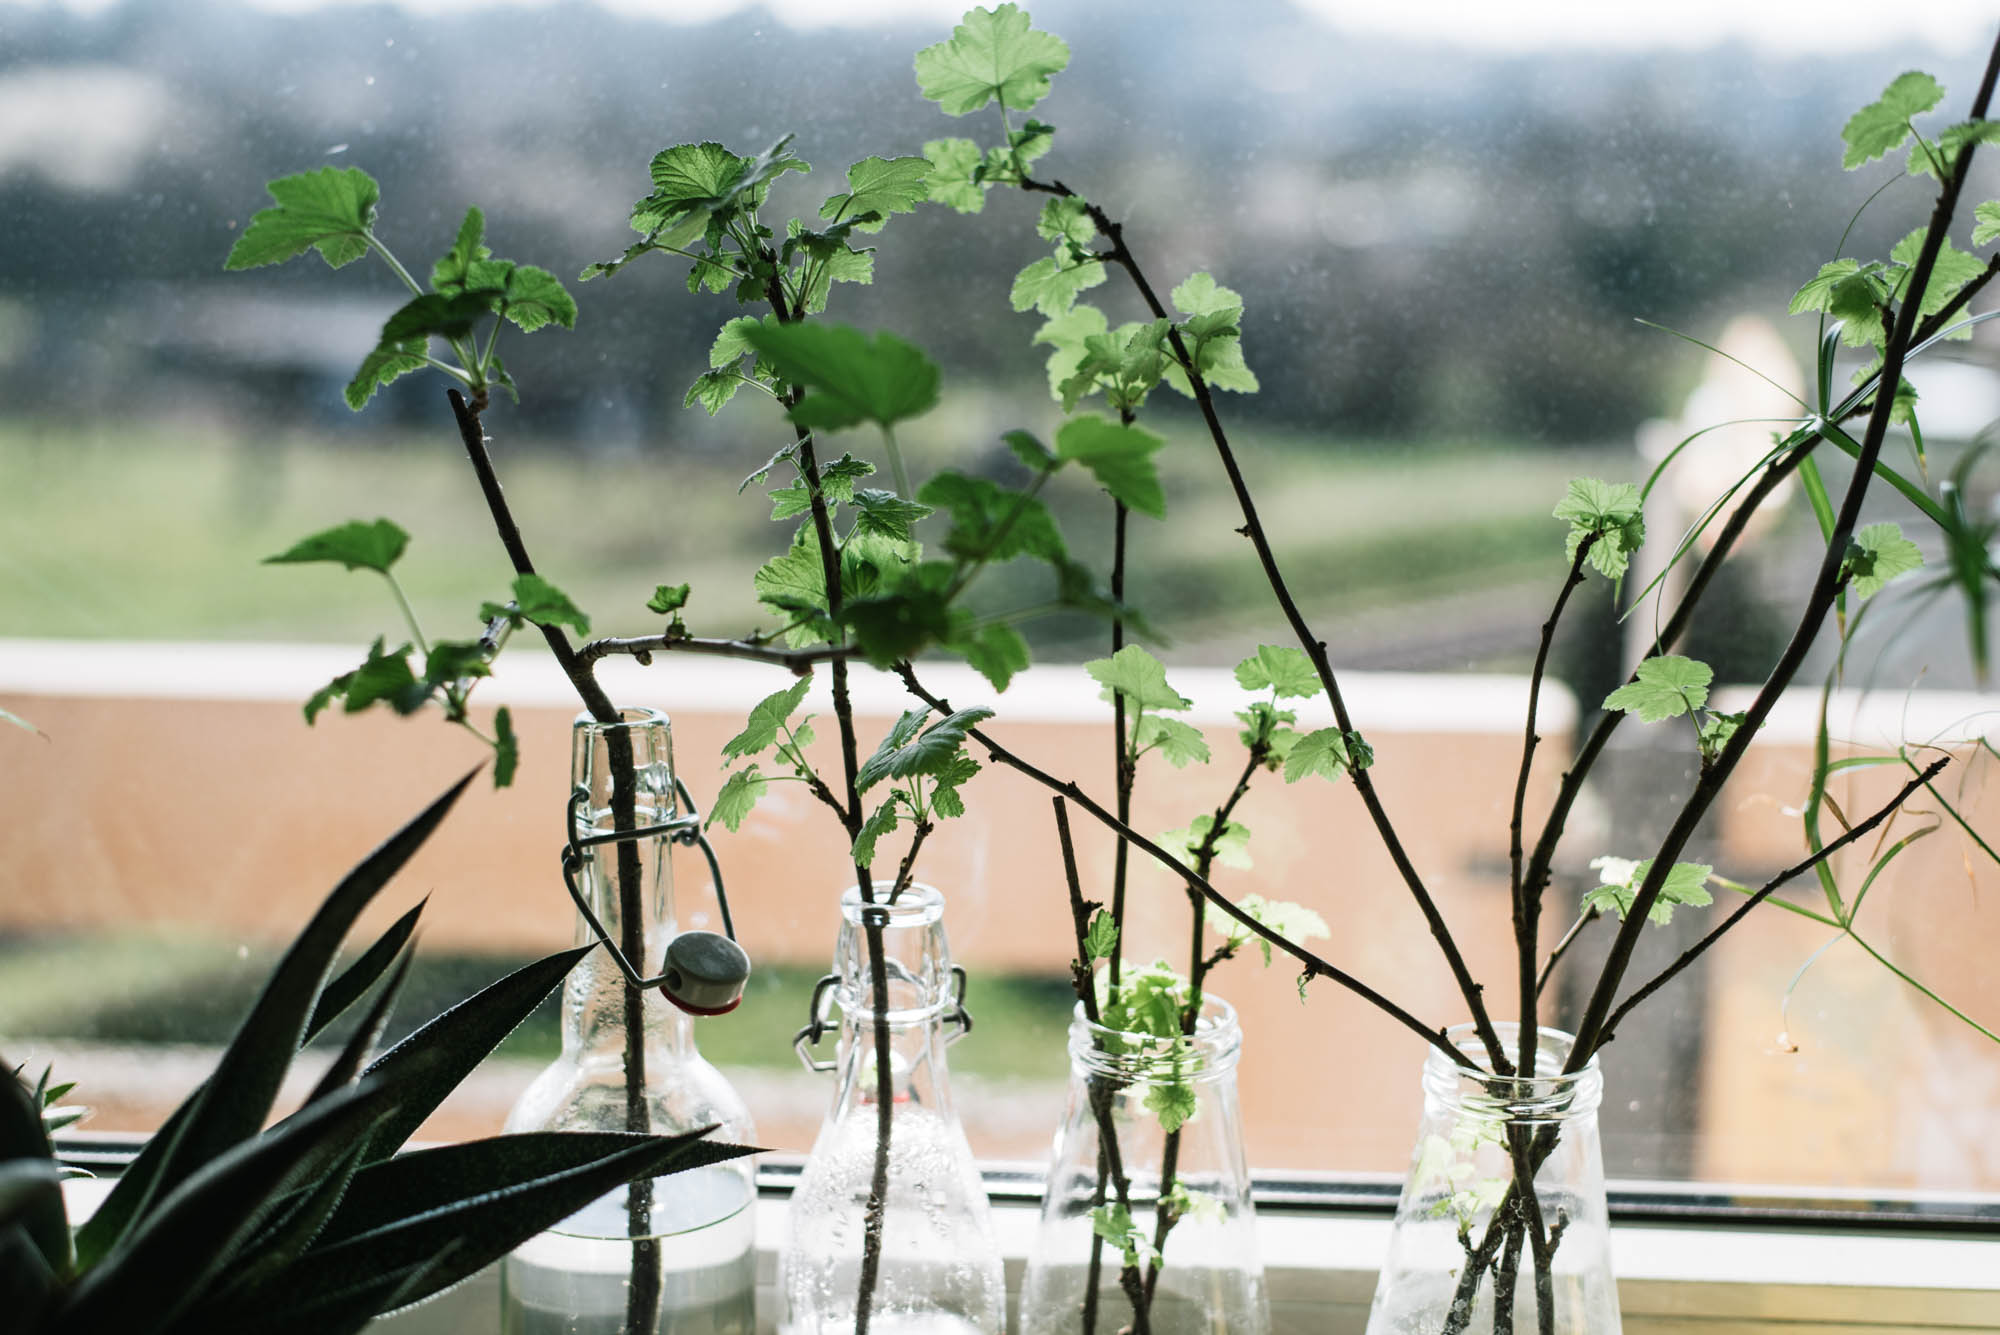 Pflanzen vermehren: 3 einfache Anleitungen zum Vermehren mit Stecklingen, Ablegern und mit Abmoosen - Schritt für Schritt erklärt